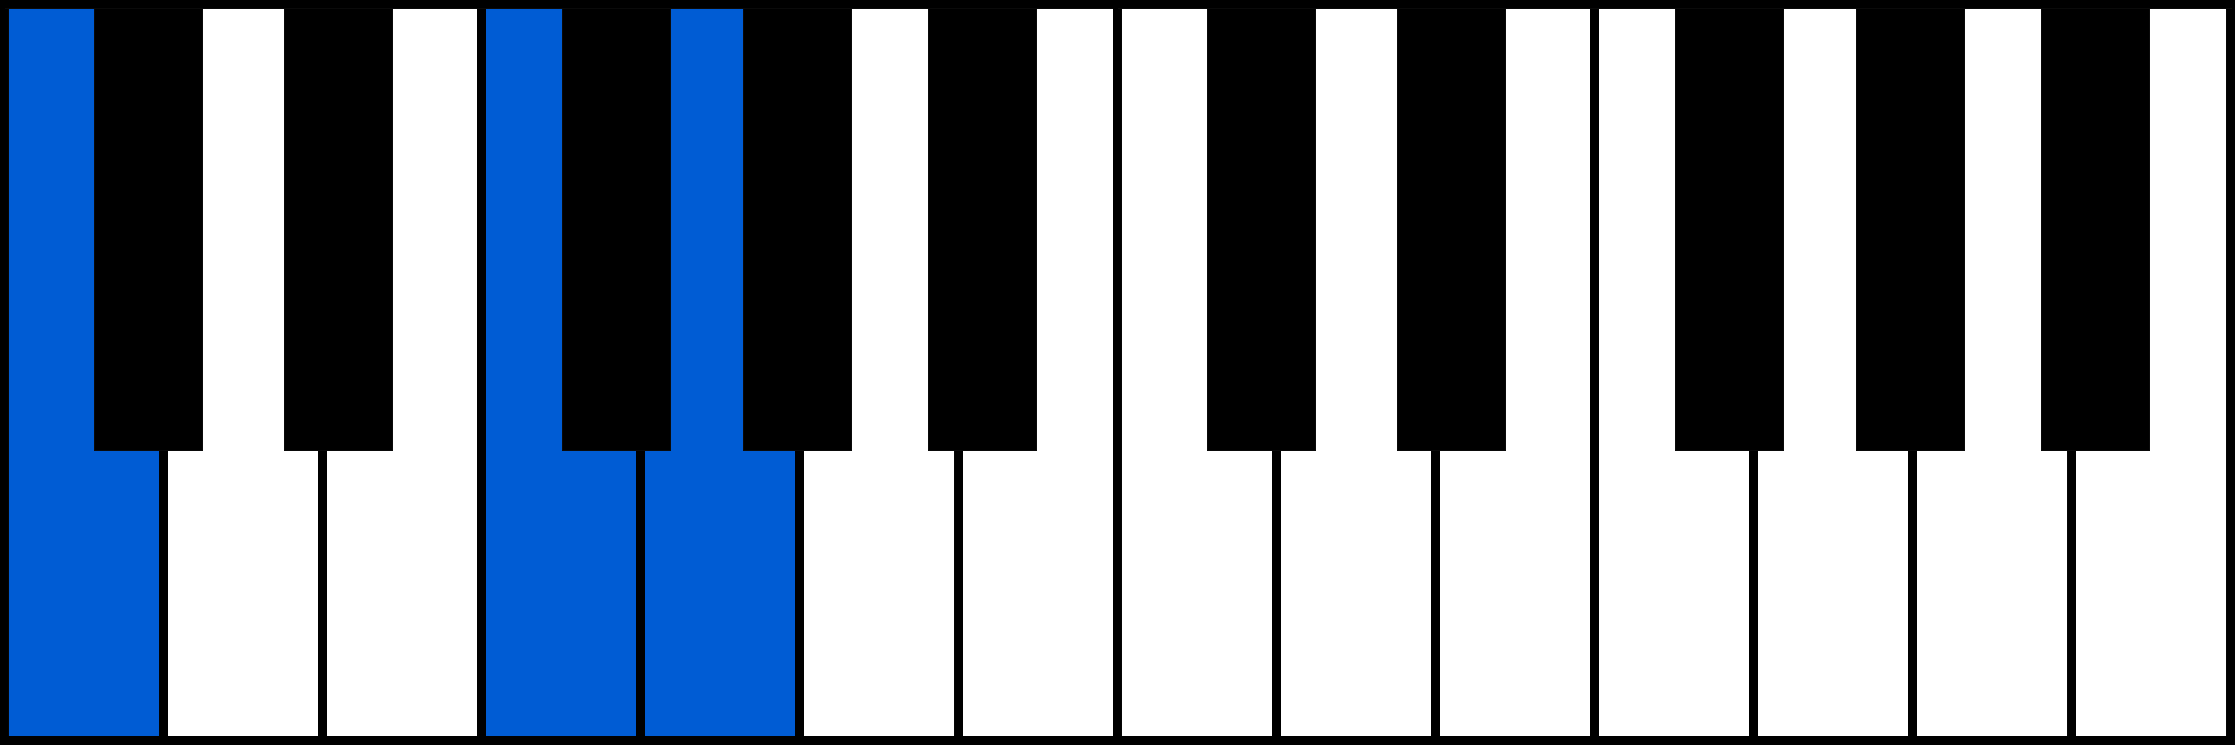 Csus4 piano chord fingering